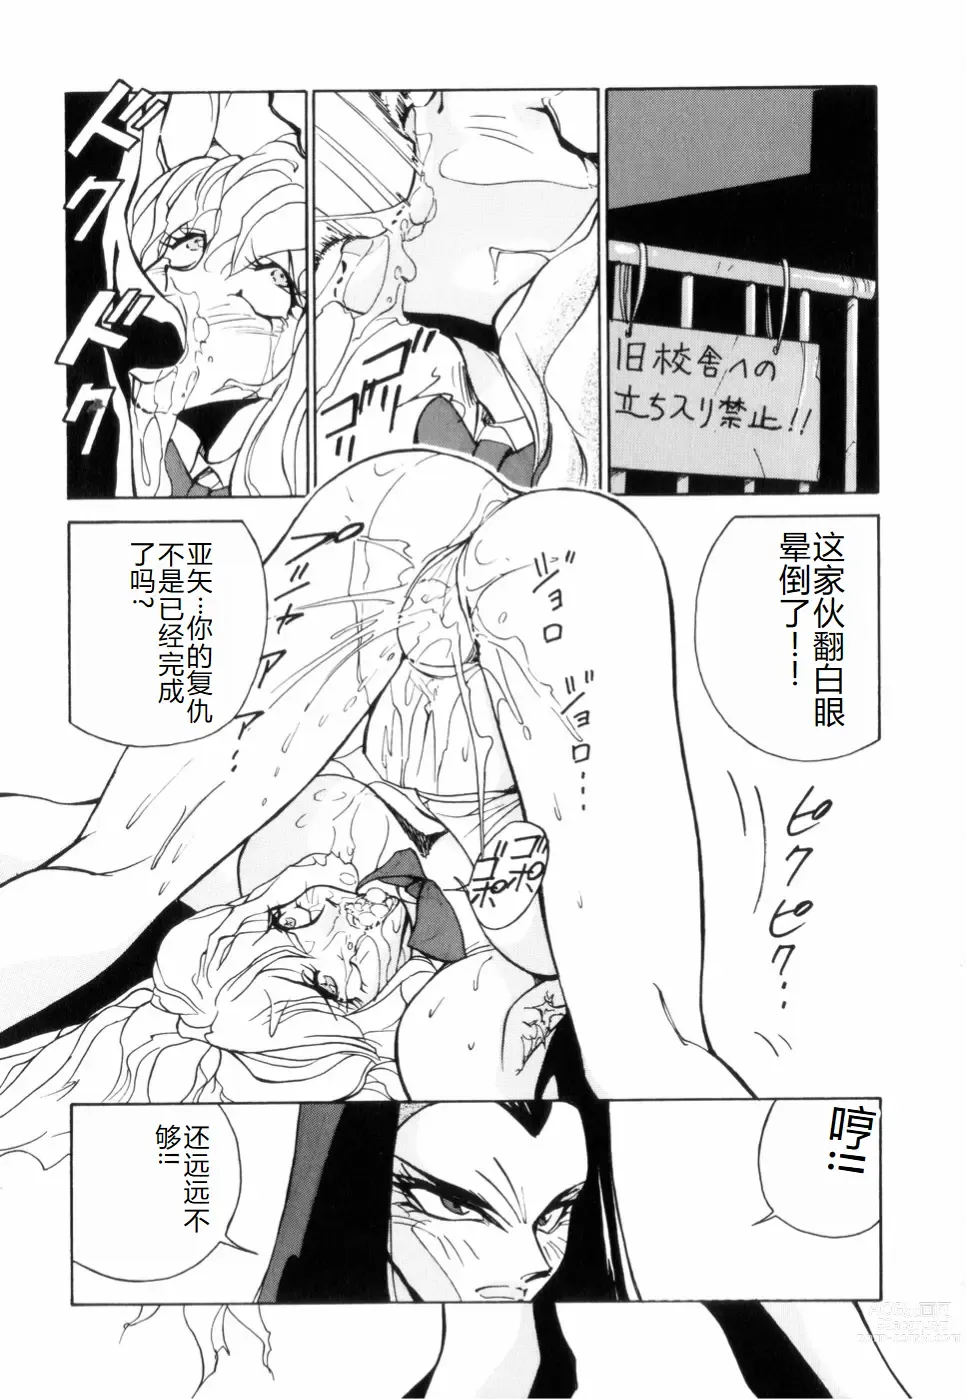 Page 147 of manga Hakujuu no Hasha